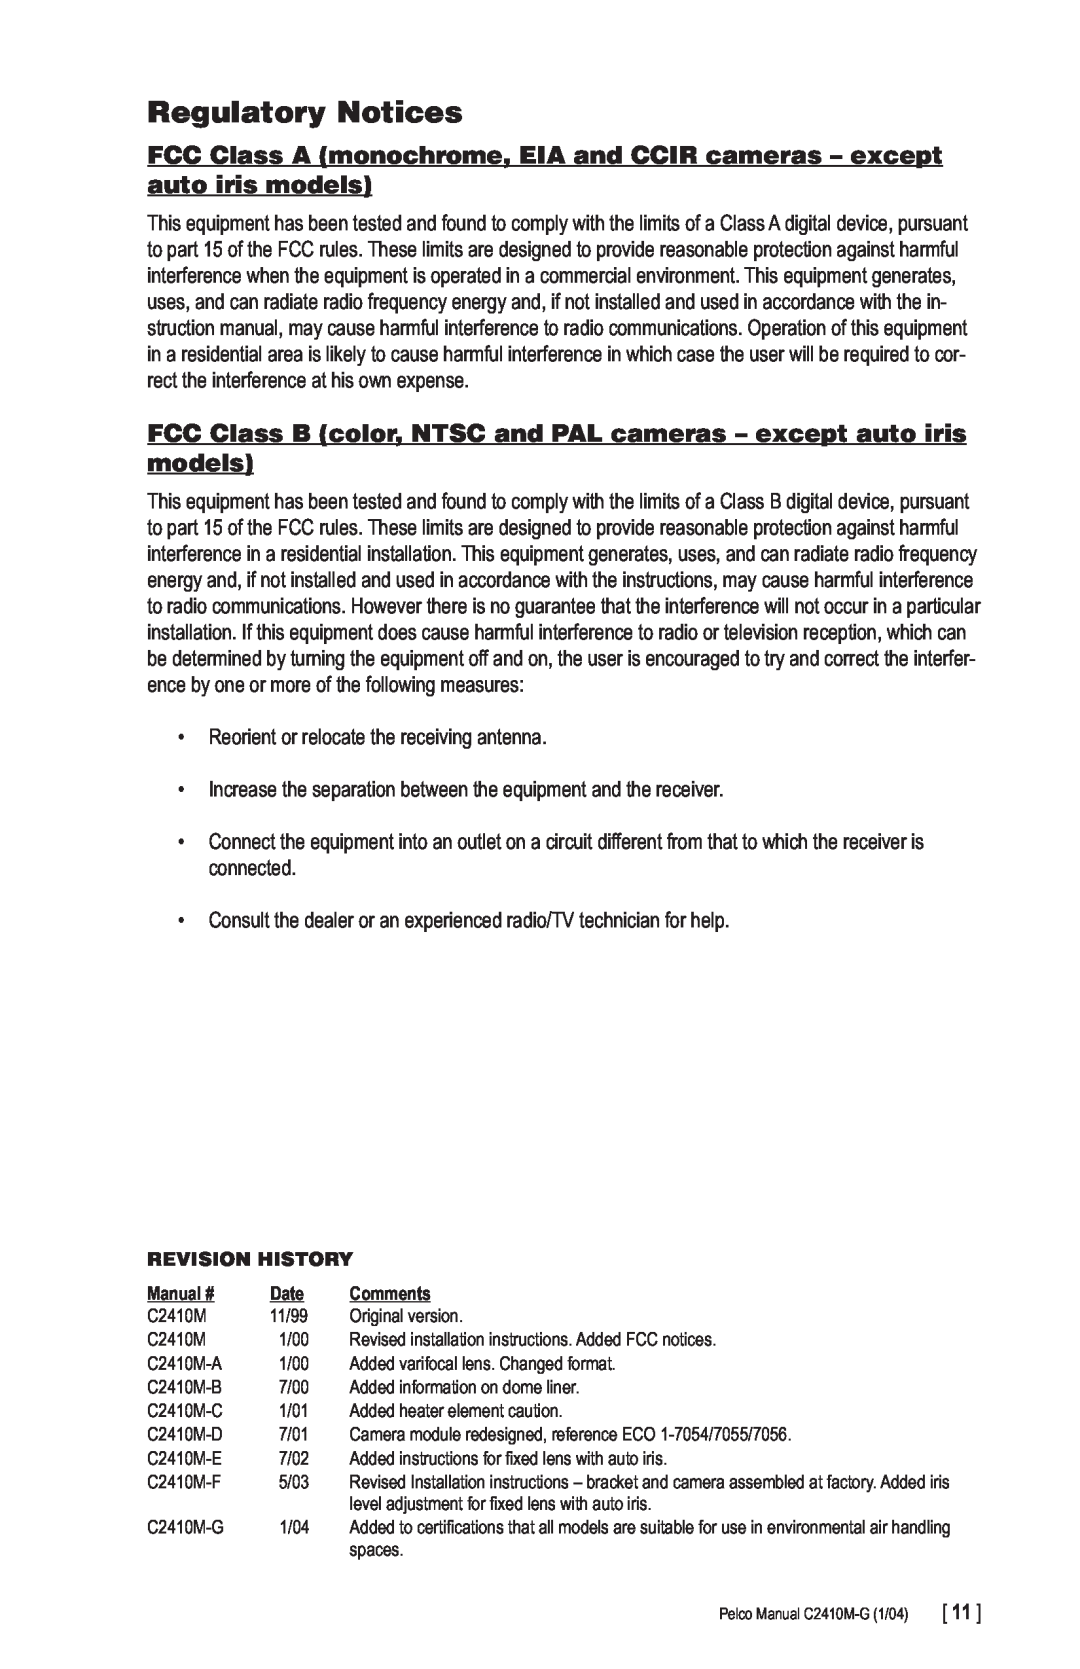 Pelco C2410M-G manual Regulatory Notices 